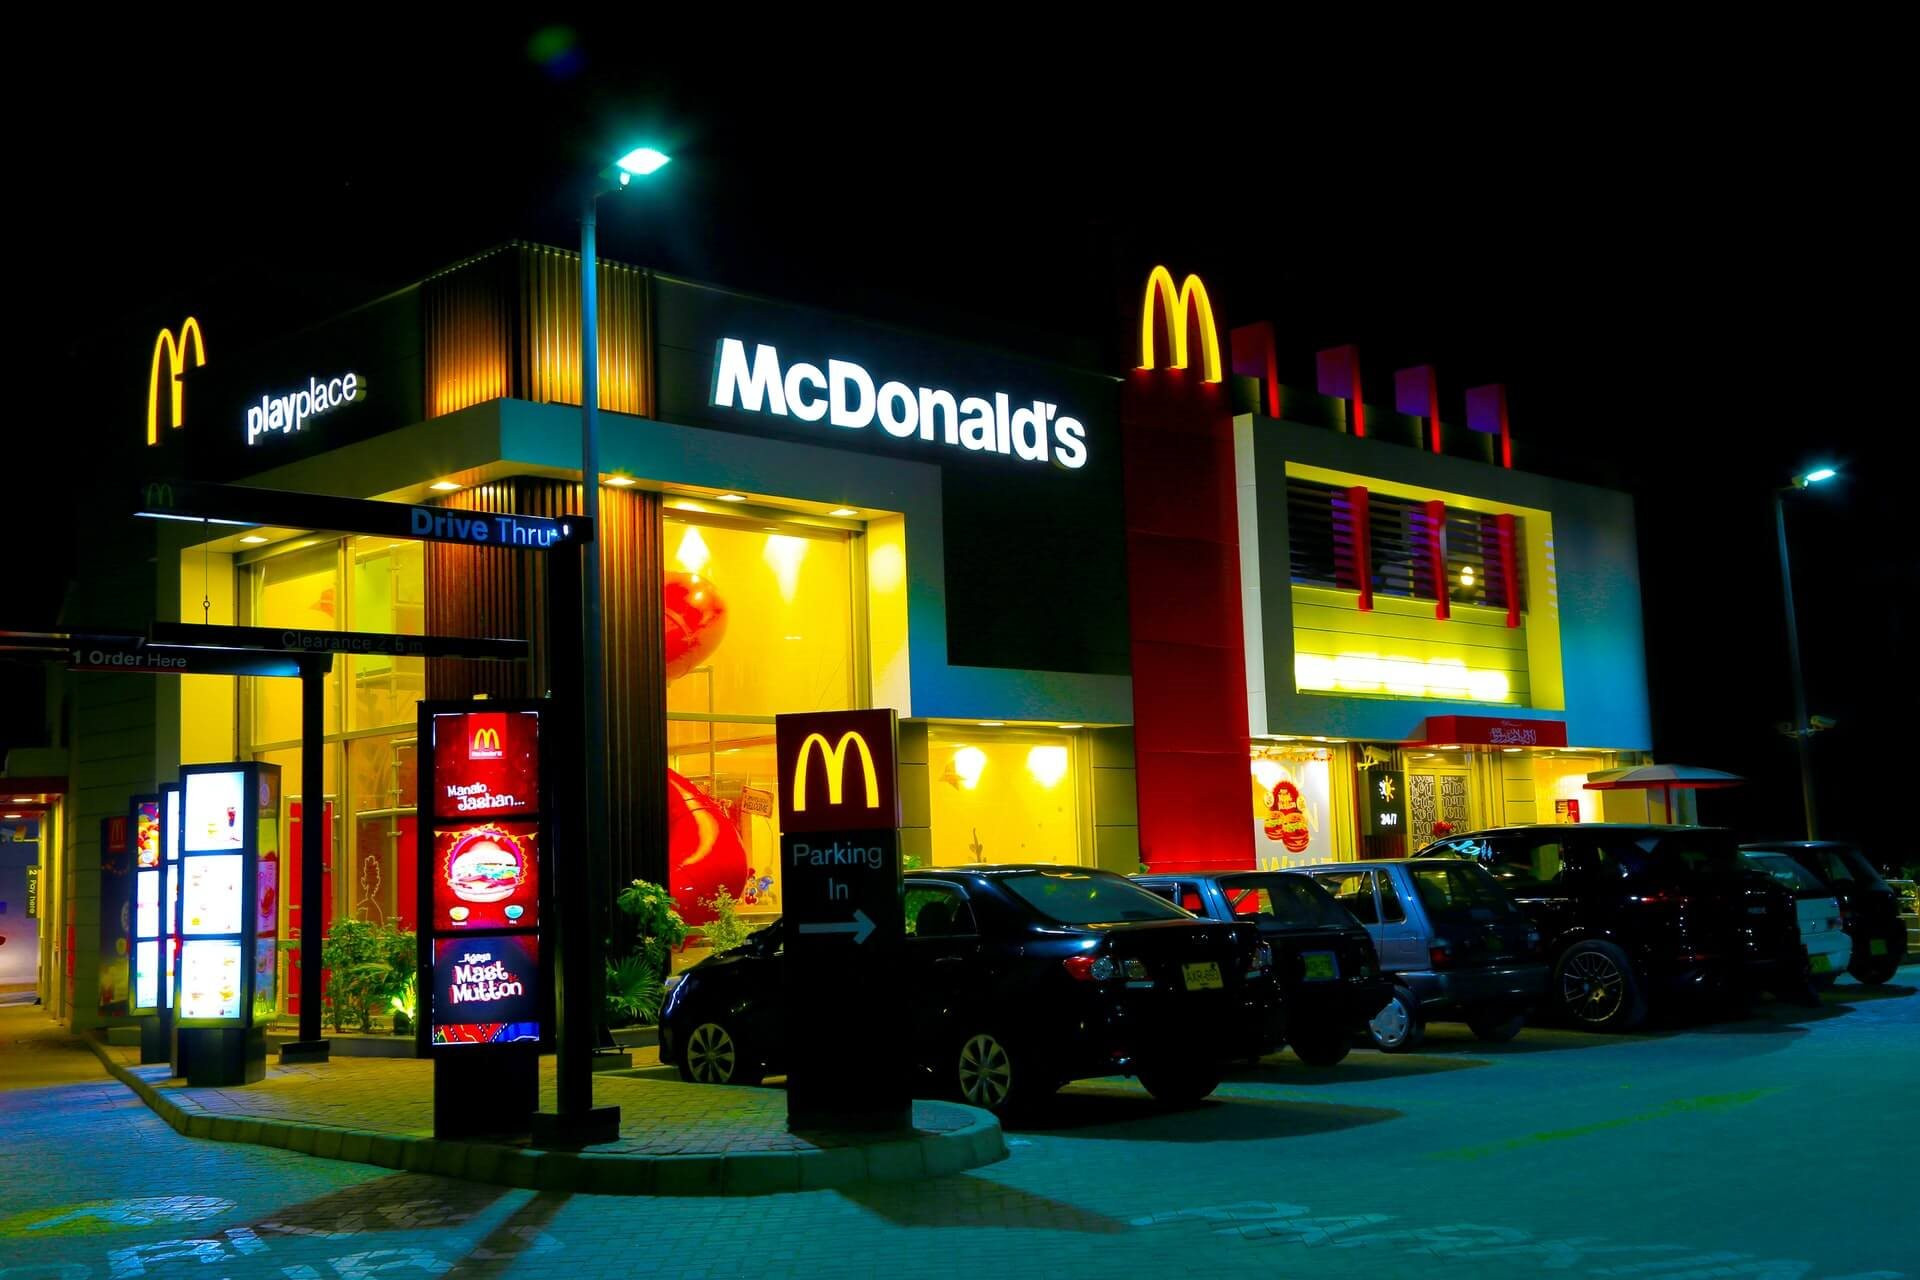 ‘Quái vật’ McDonald’s: Chủ đất lớn thứ 6 trên thế giới, chuyên đi buôn BĐS, bán khoai tây chiên, burger chỉ là phụ - Ảnh 2.